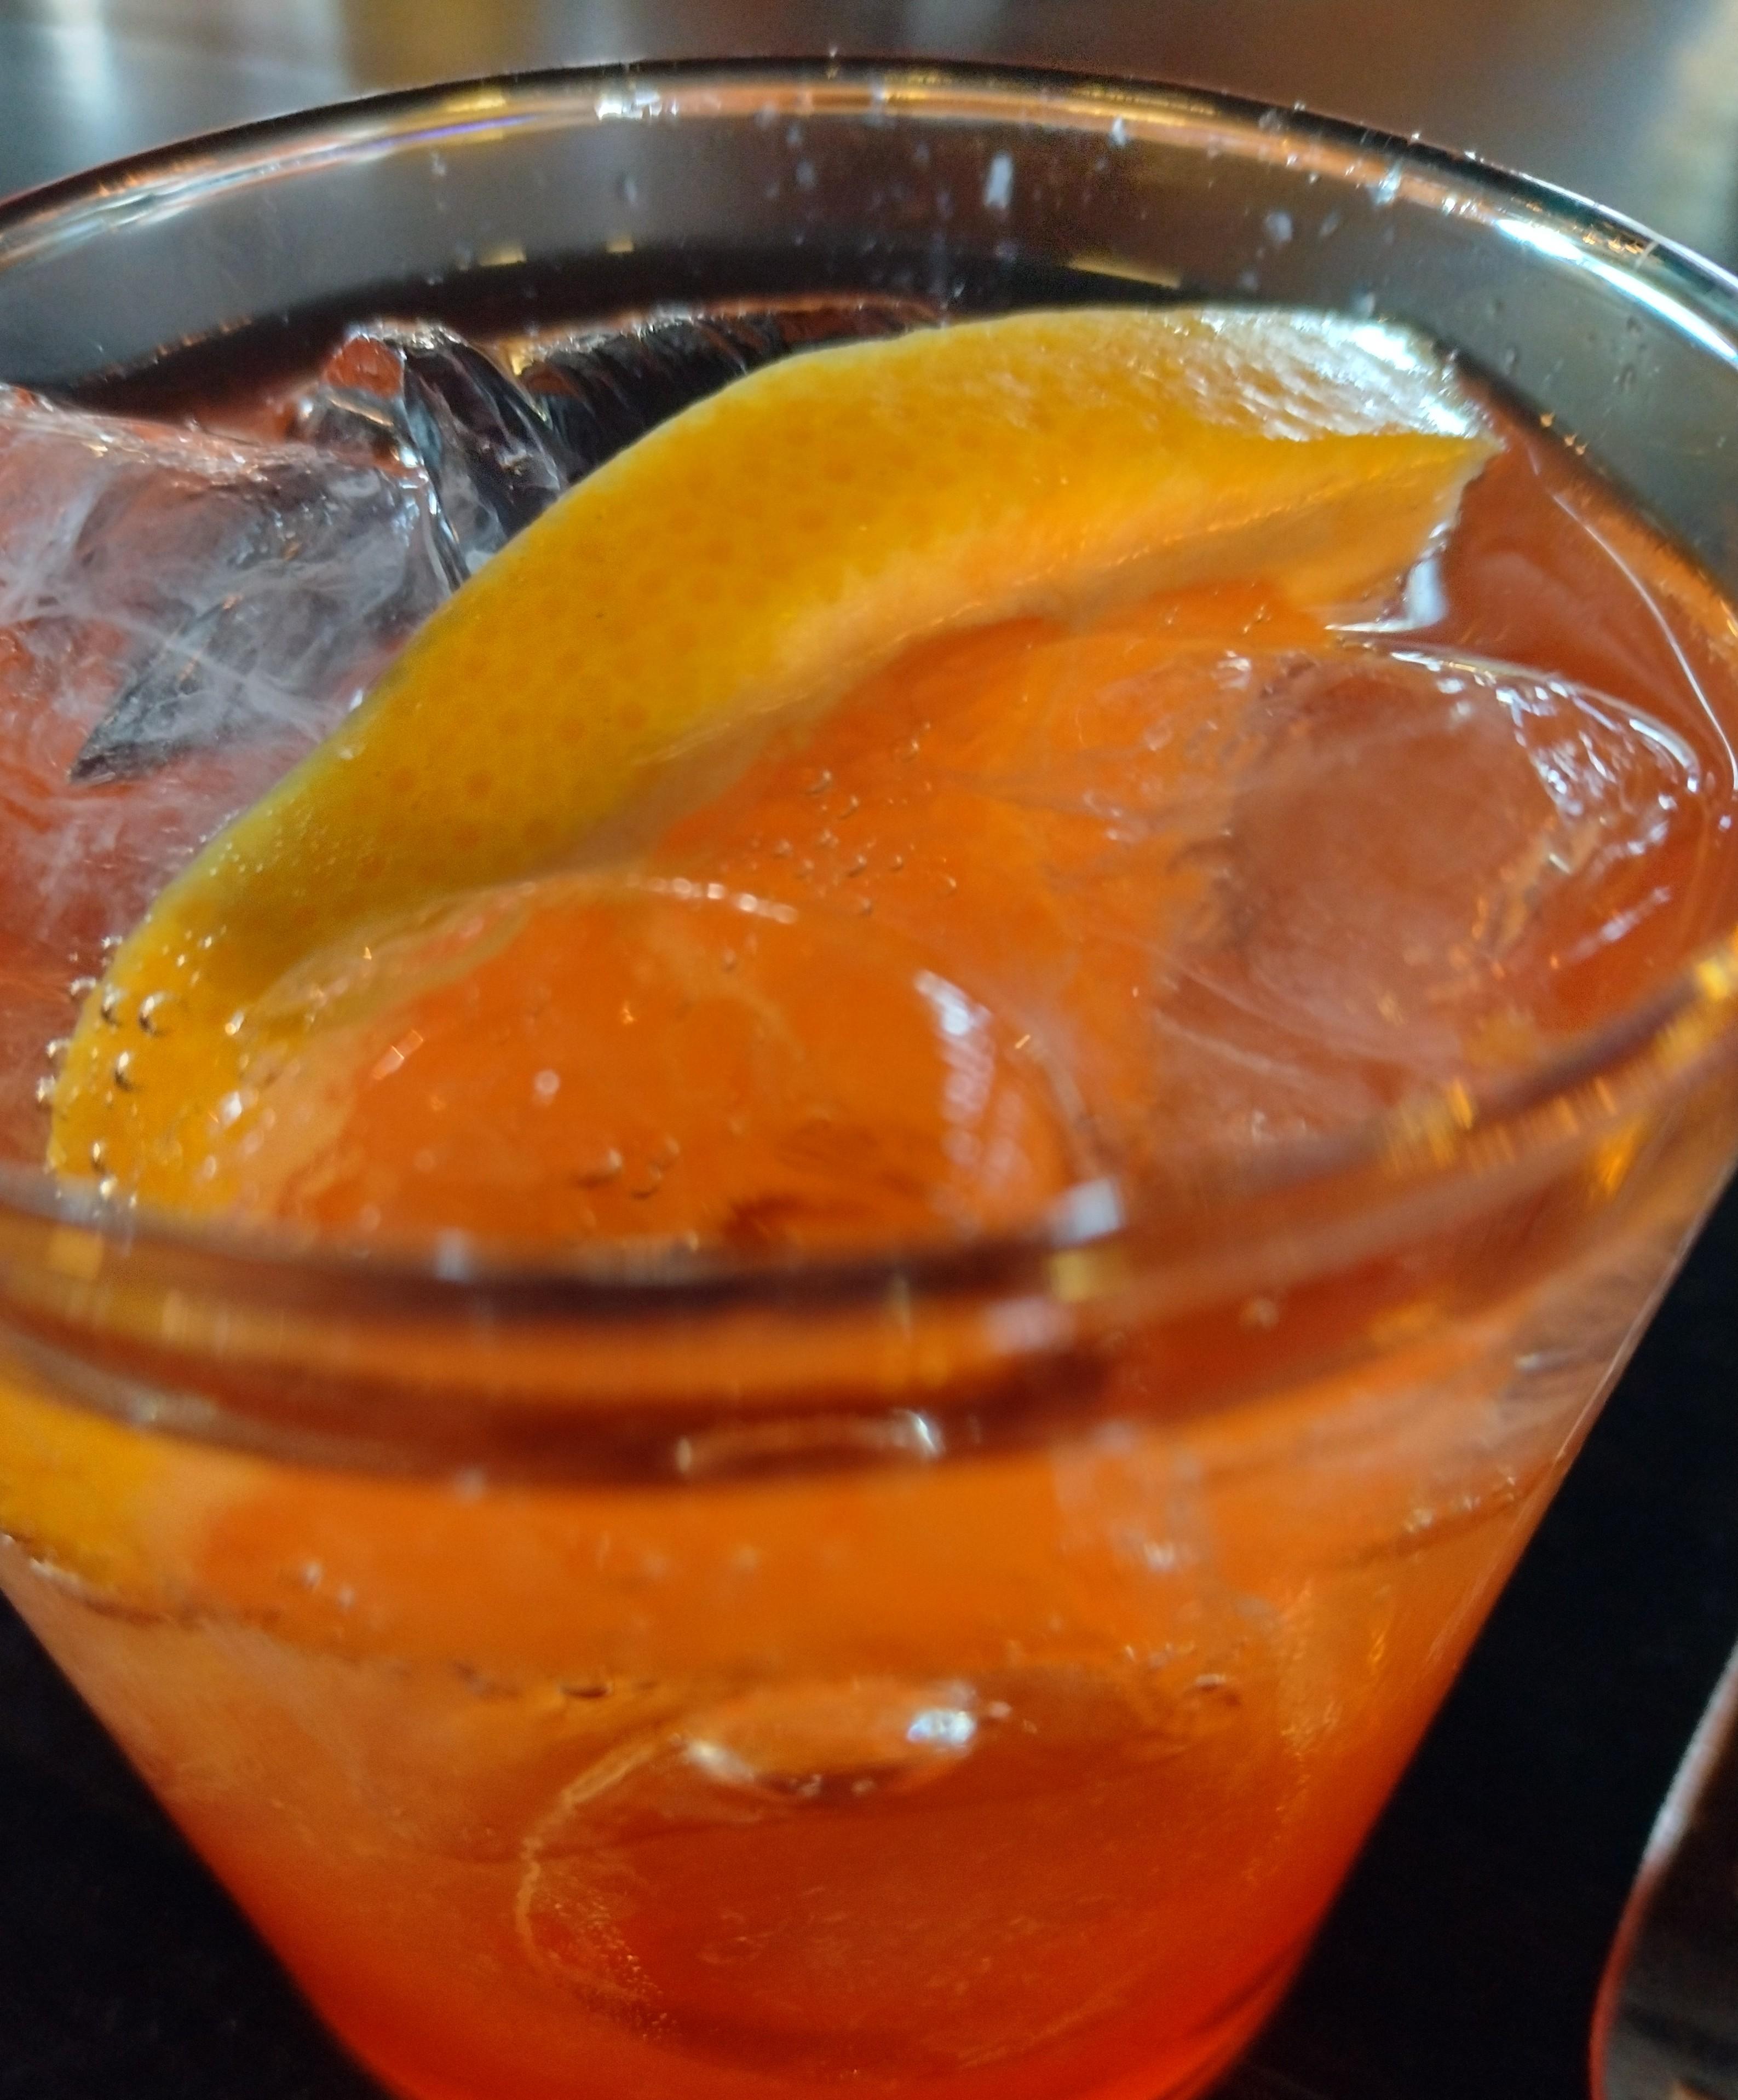 Kuvassa oranssin värinen drinkki lähikuvassa, lasissa on myös jäitä.